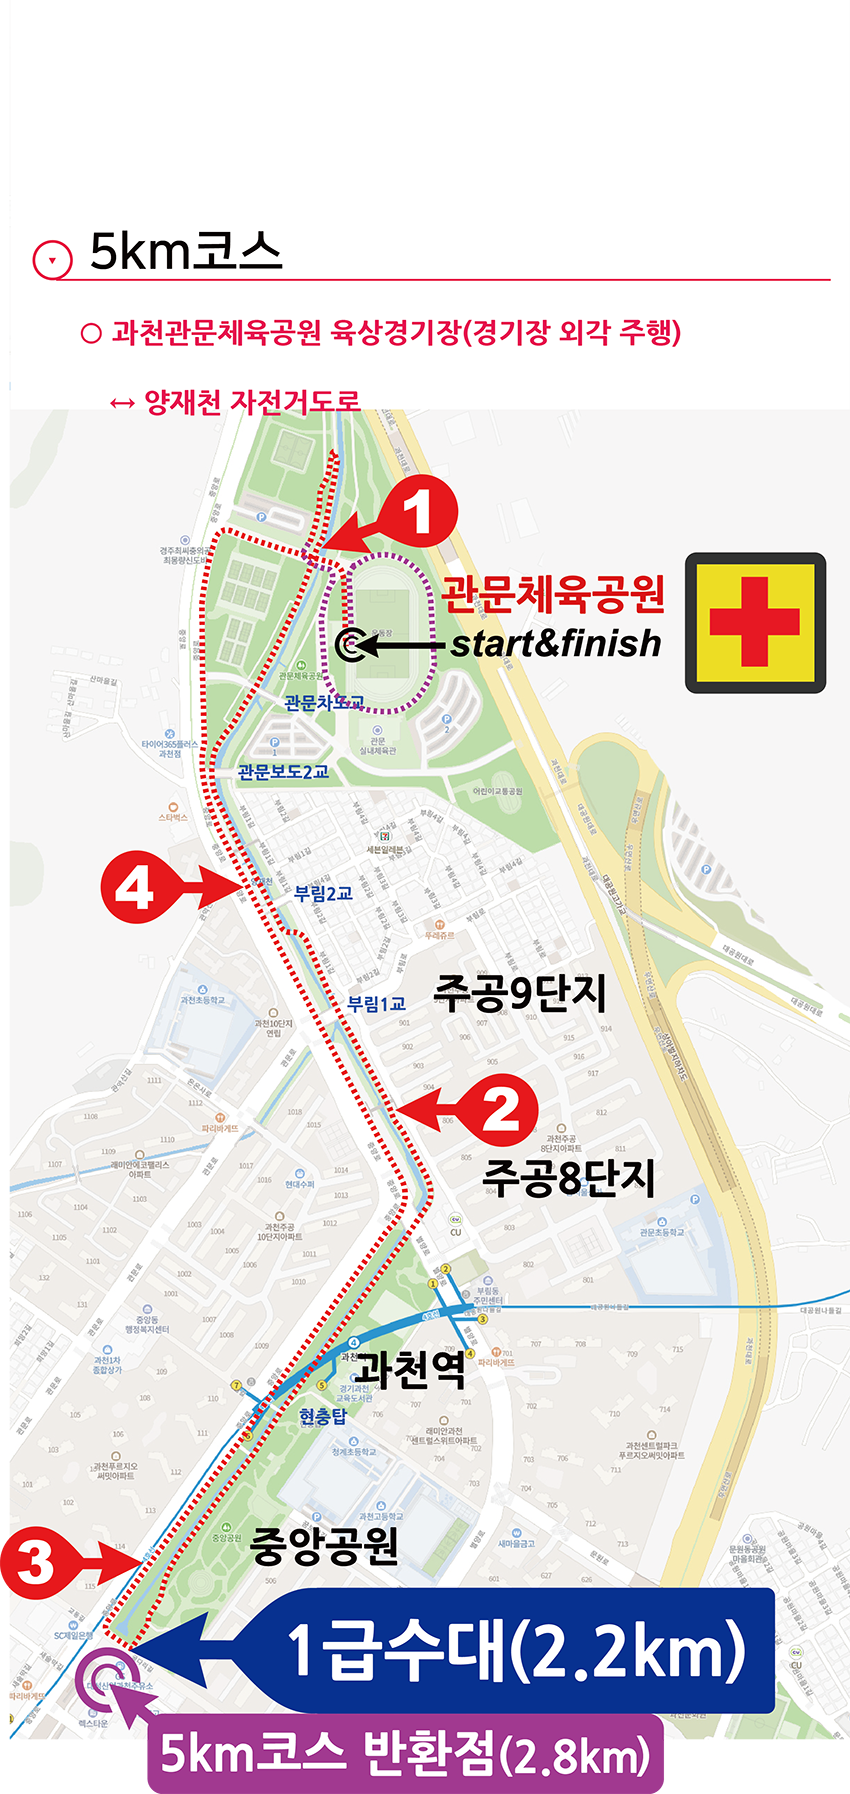 과천마라톤 대회 코스맵 - 5km